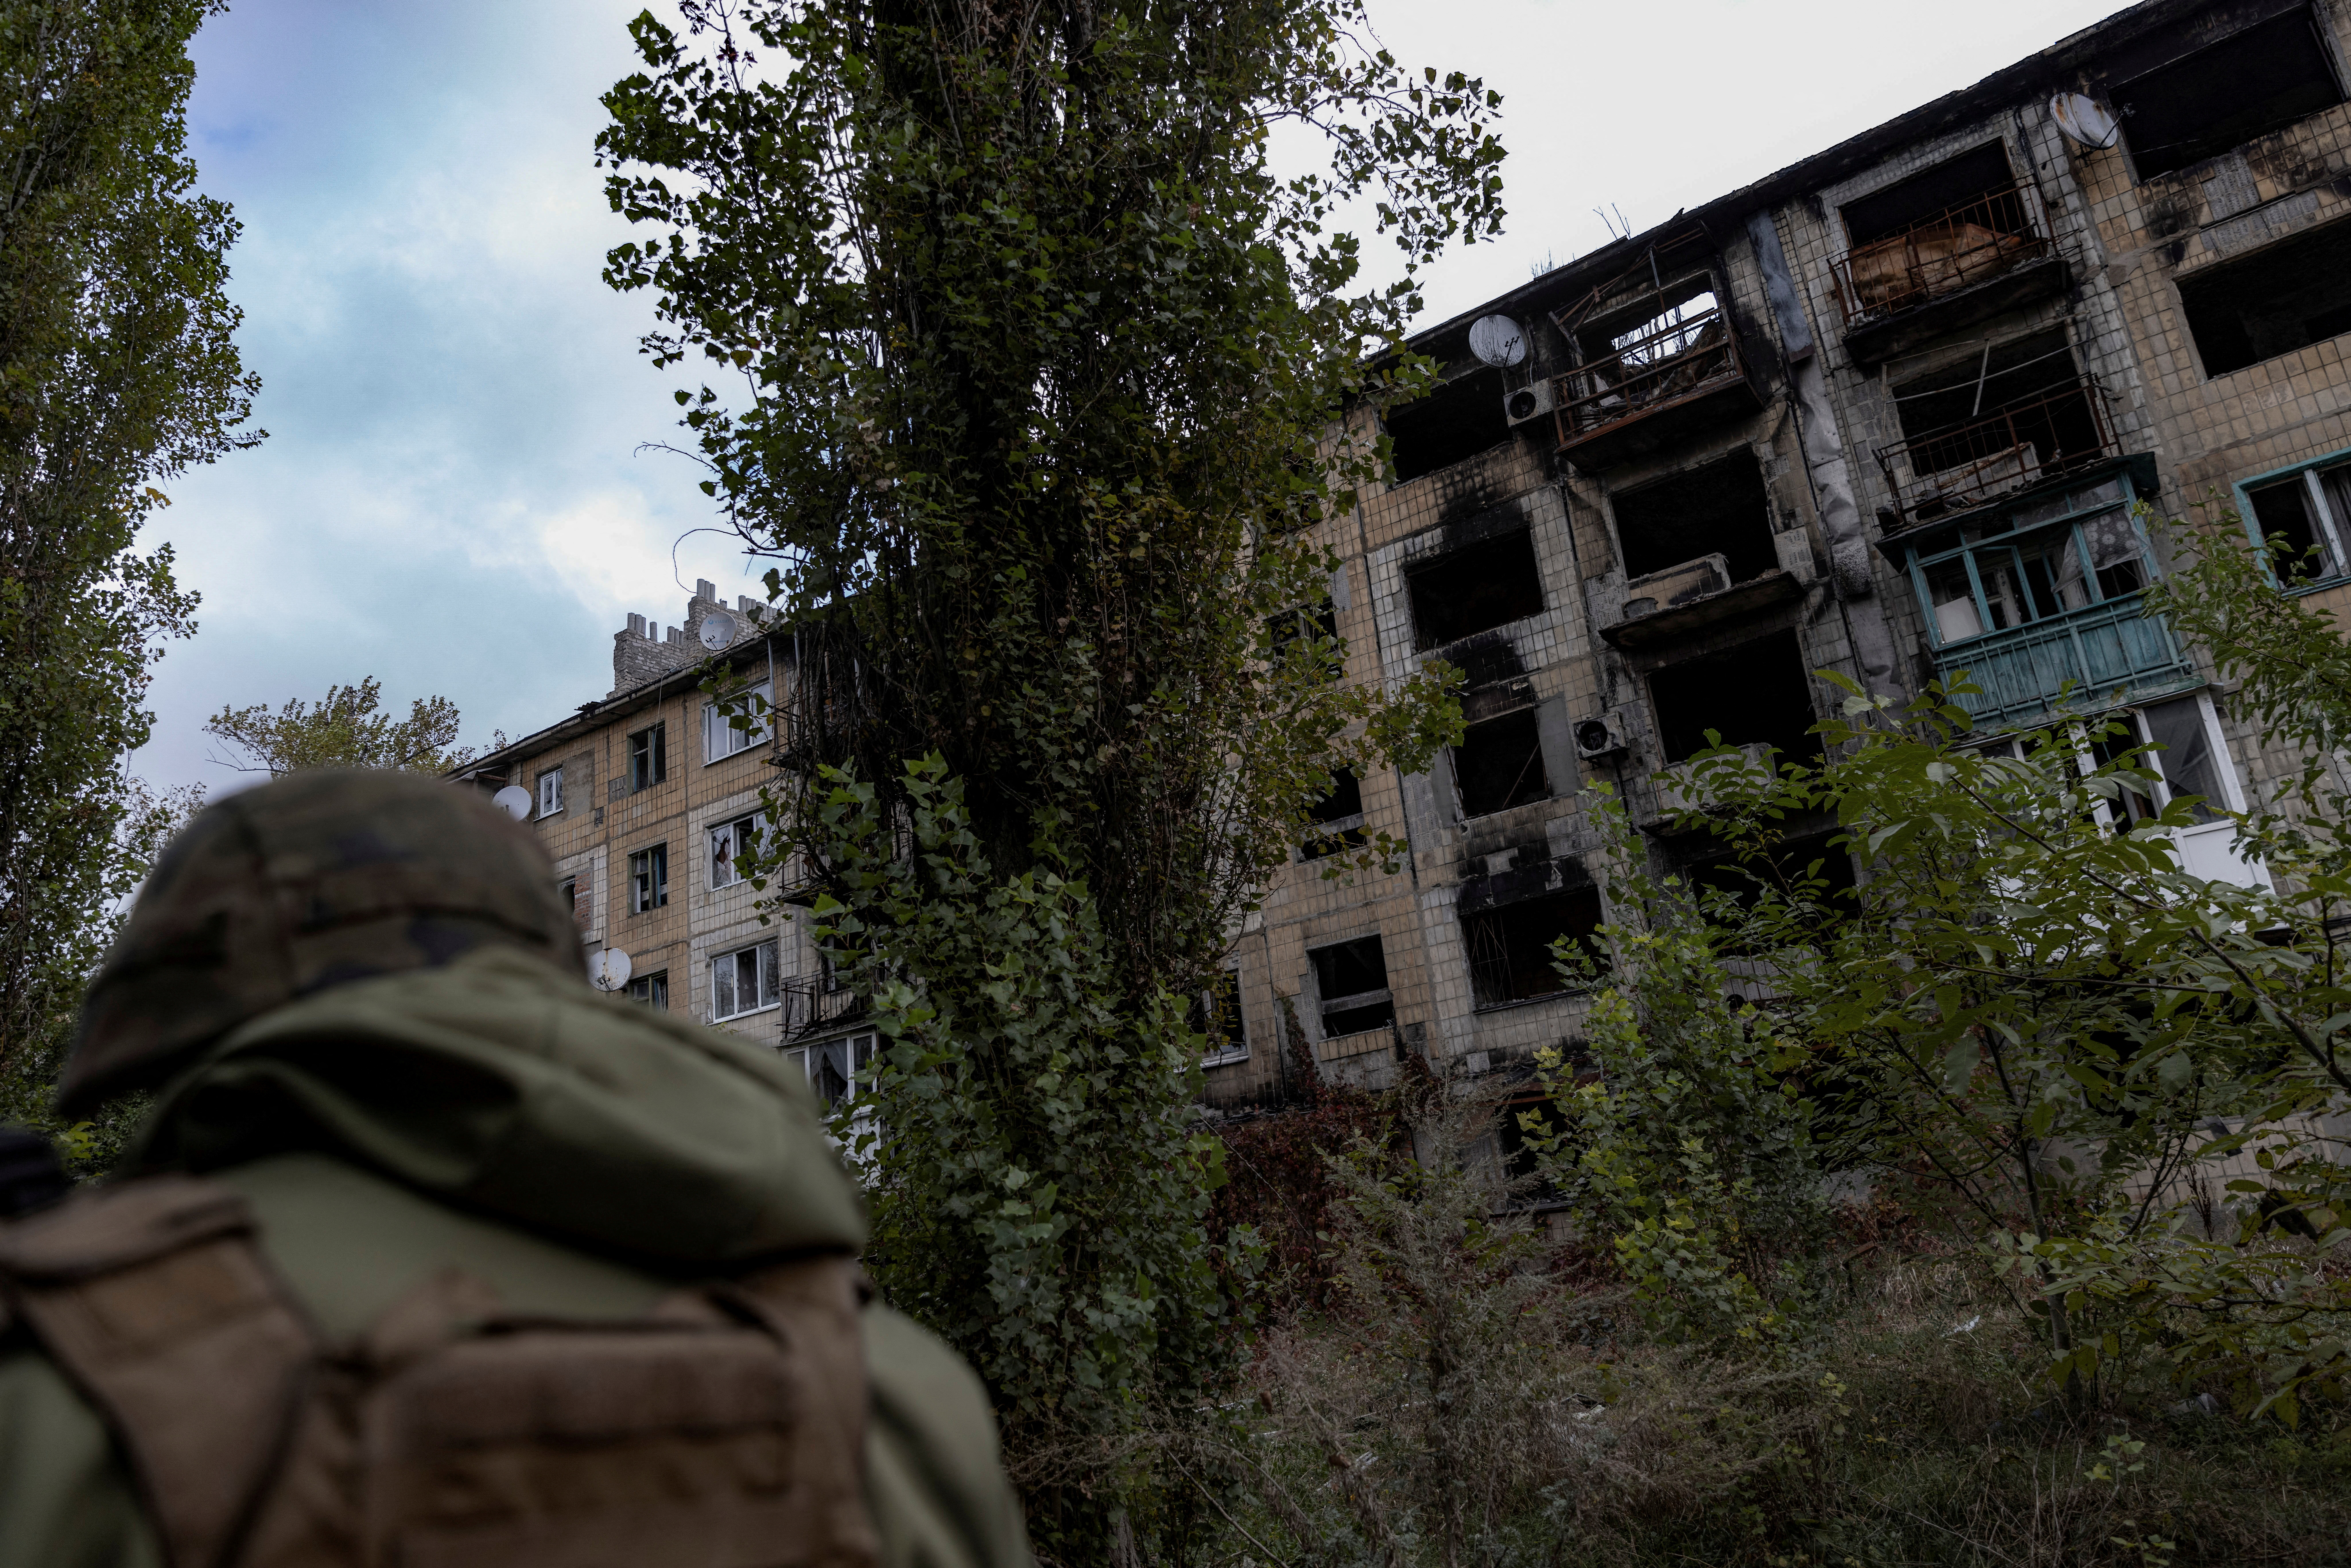 Ο ουκρανικός στρατός λέει ότι η επίθεση στην Avdiivka στα ανατολικά εντείνεται